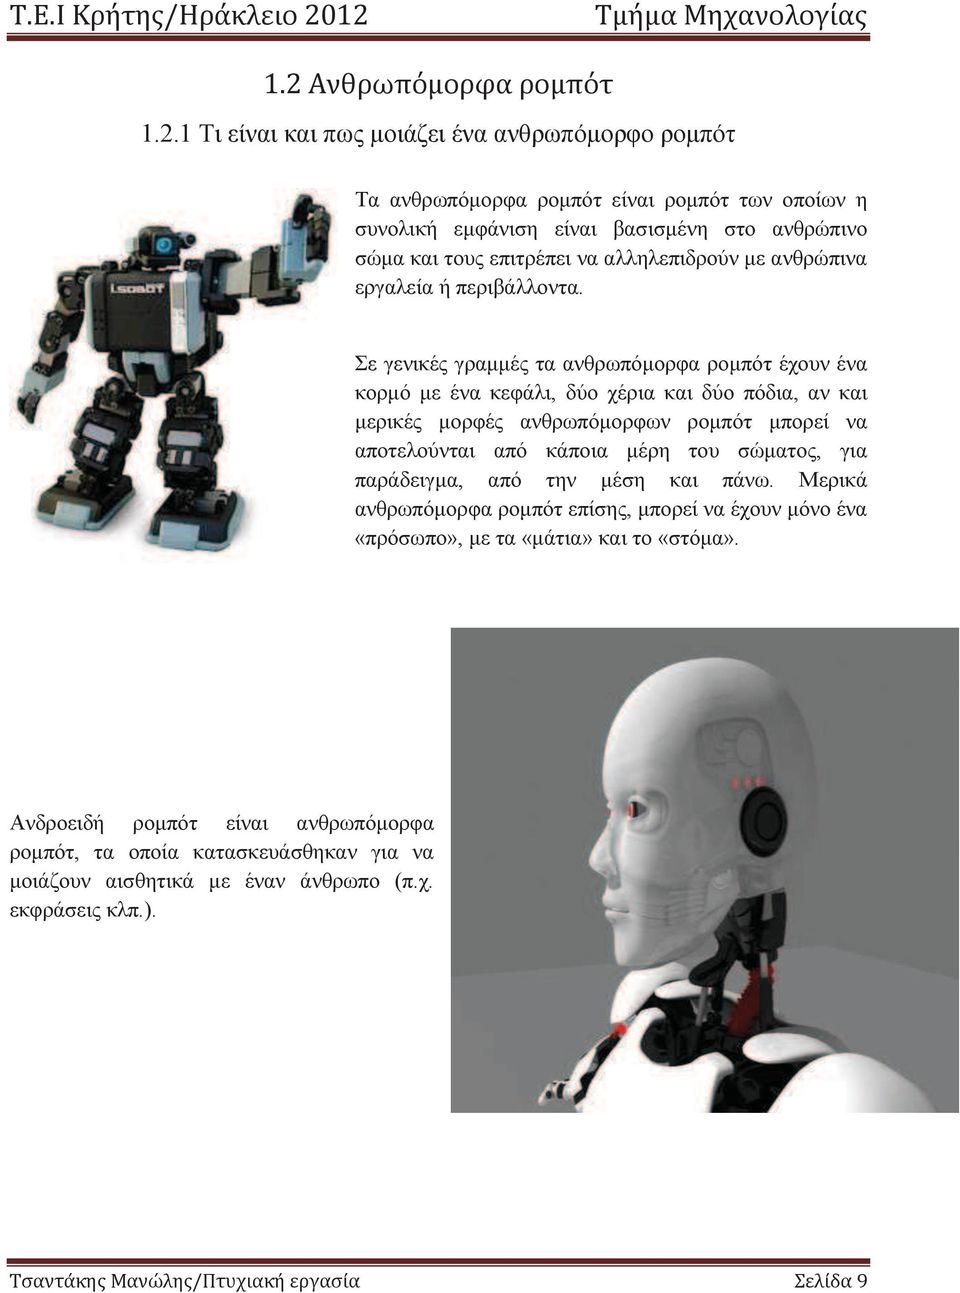 Σε γενικέ γραμμέ τα ανθρωπόμορφα ρομπότ έχουν ένα κορμό με ένα κεφάλι, δύο χέρια και δύο πόδια, αν και μερικέ μορφέ ανθρωπόμορφων ρομπότ μπορεί να αποτελούνται από κάποια μέρη του σώματο,